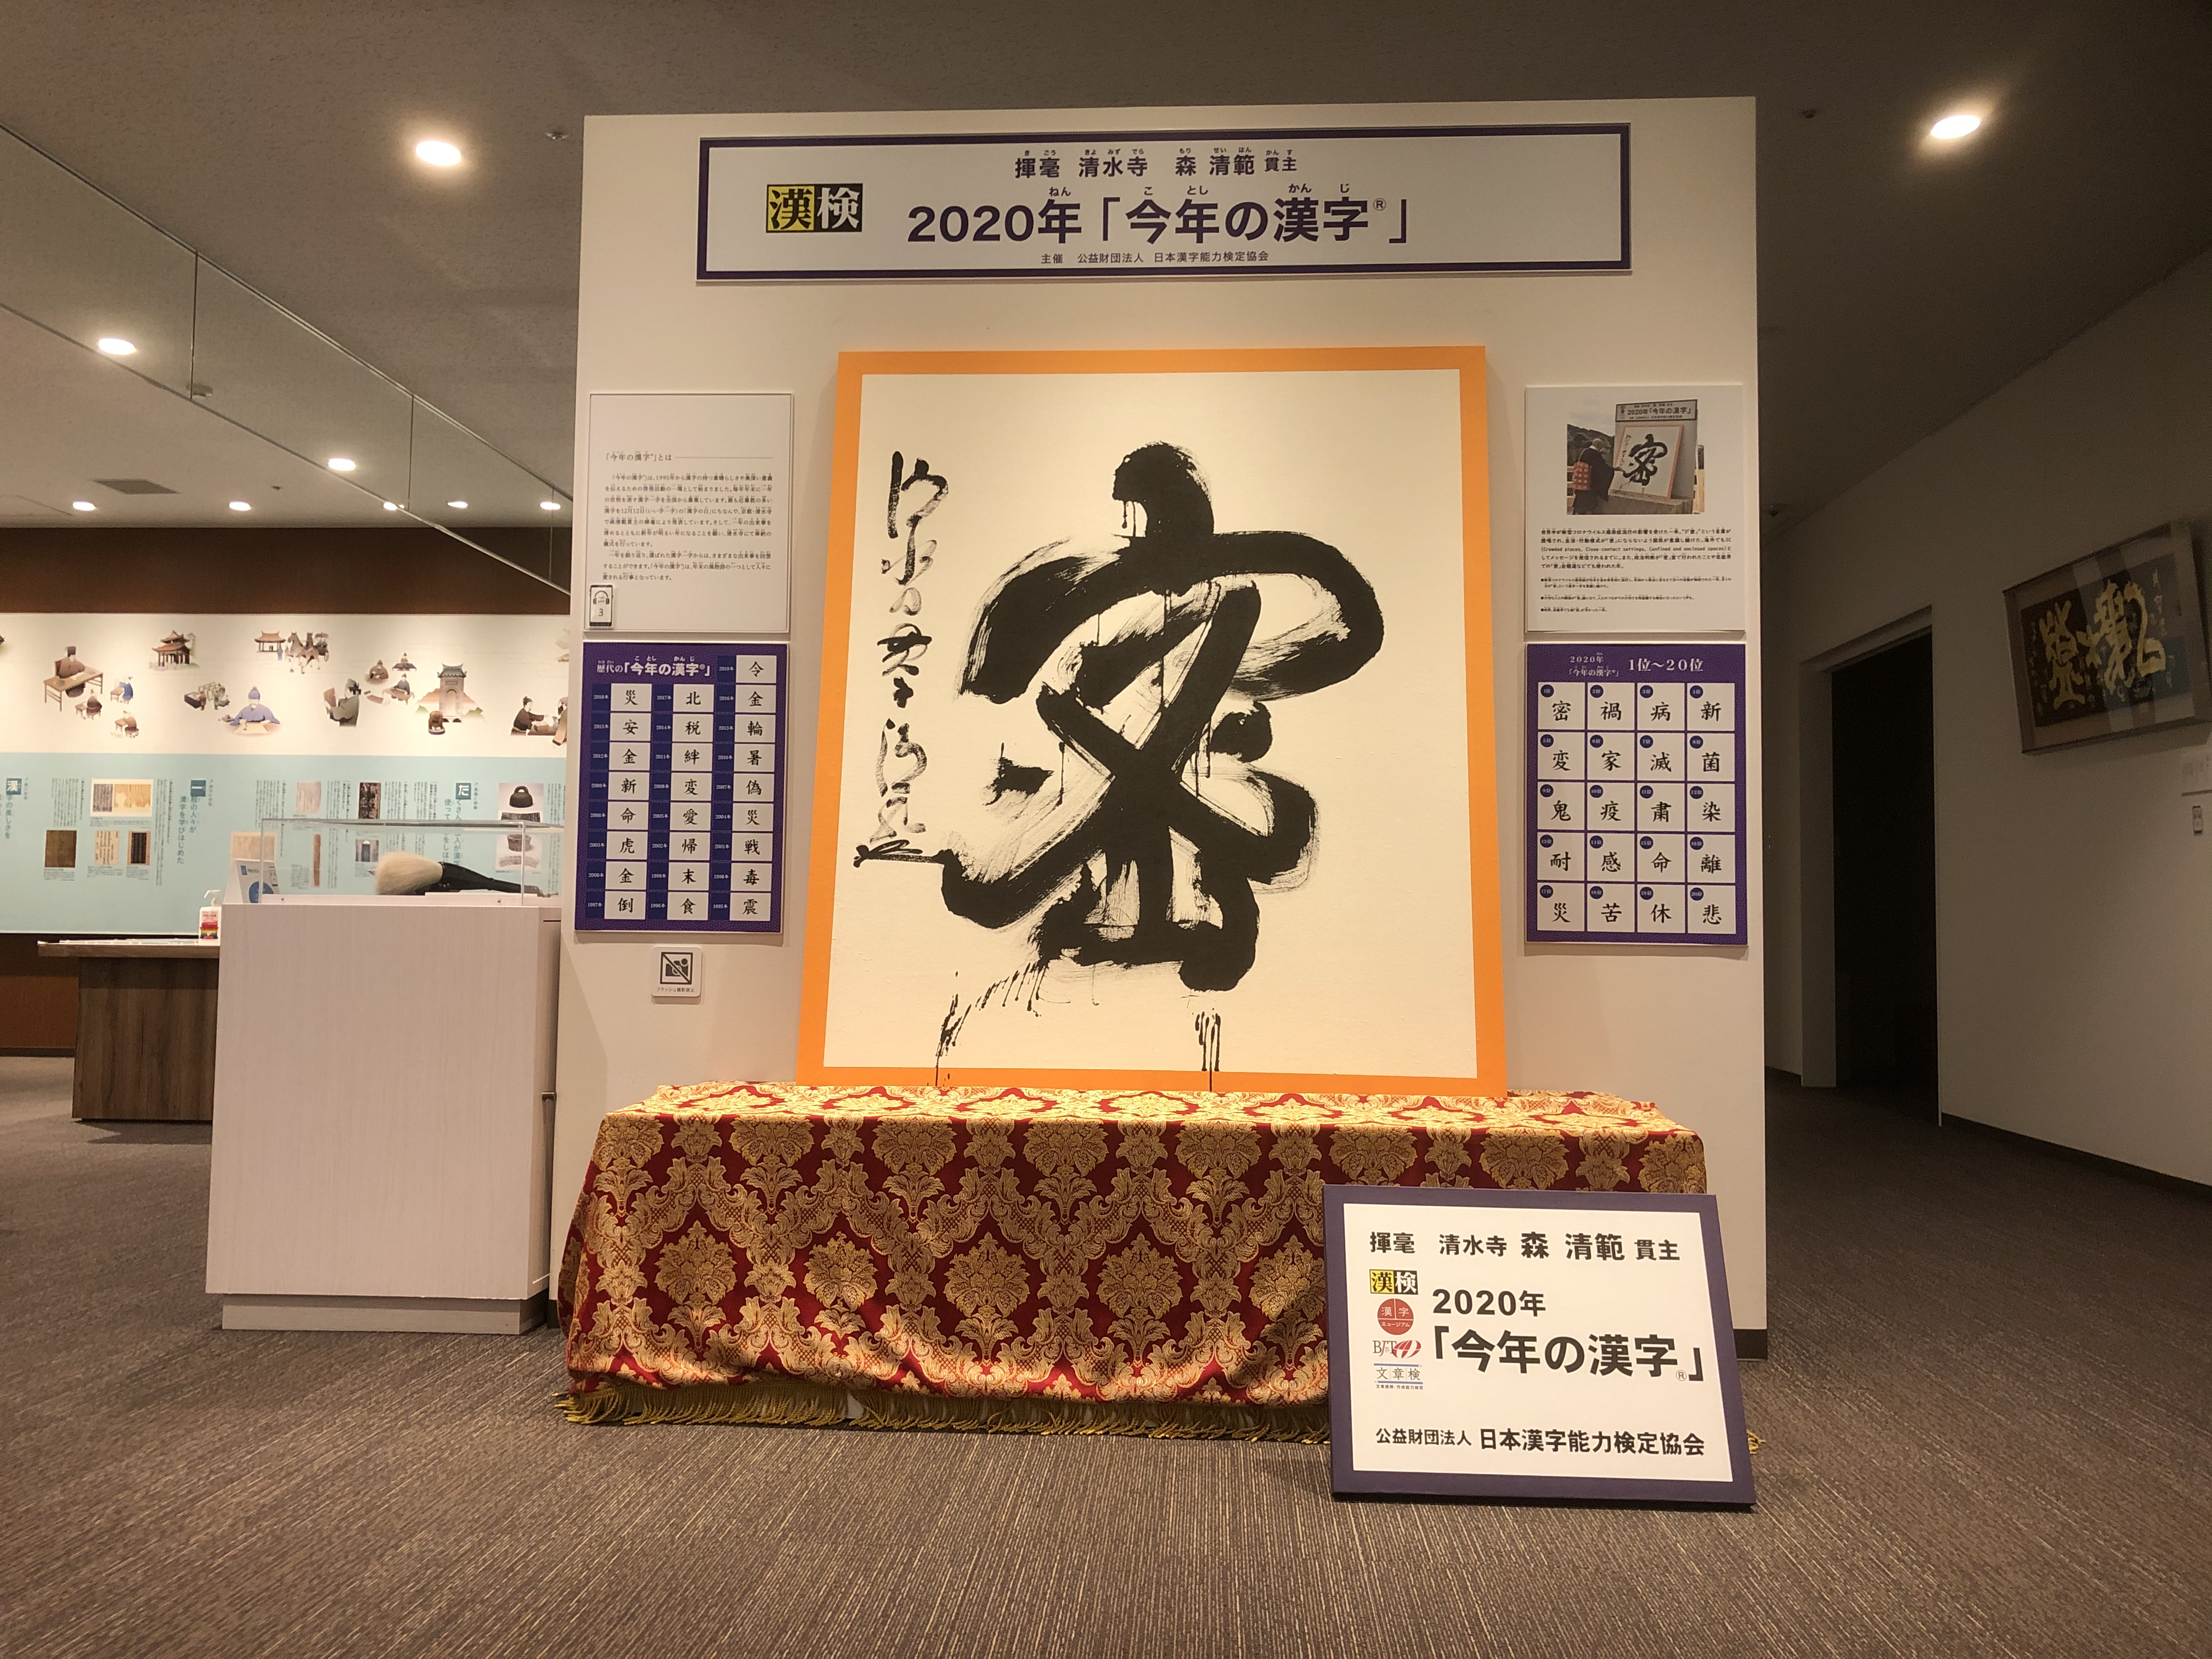 ひとりでゆっくり学ぶ 漢字ミュージアムおすすめ見学コース 漢検 漢字博物館 図書館 漢字ミュージアム